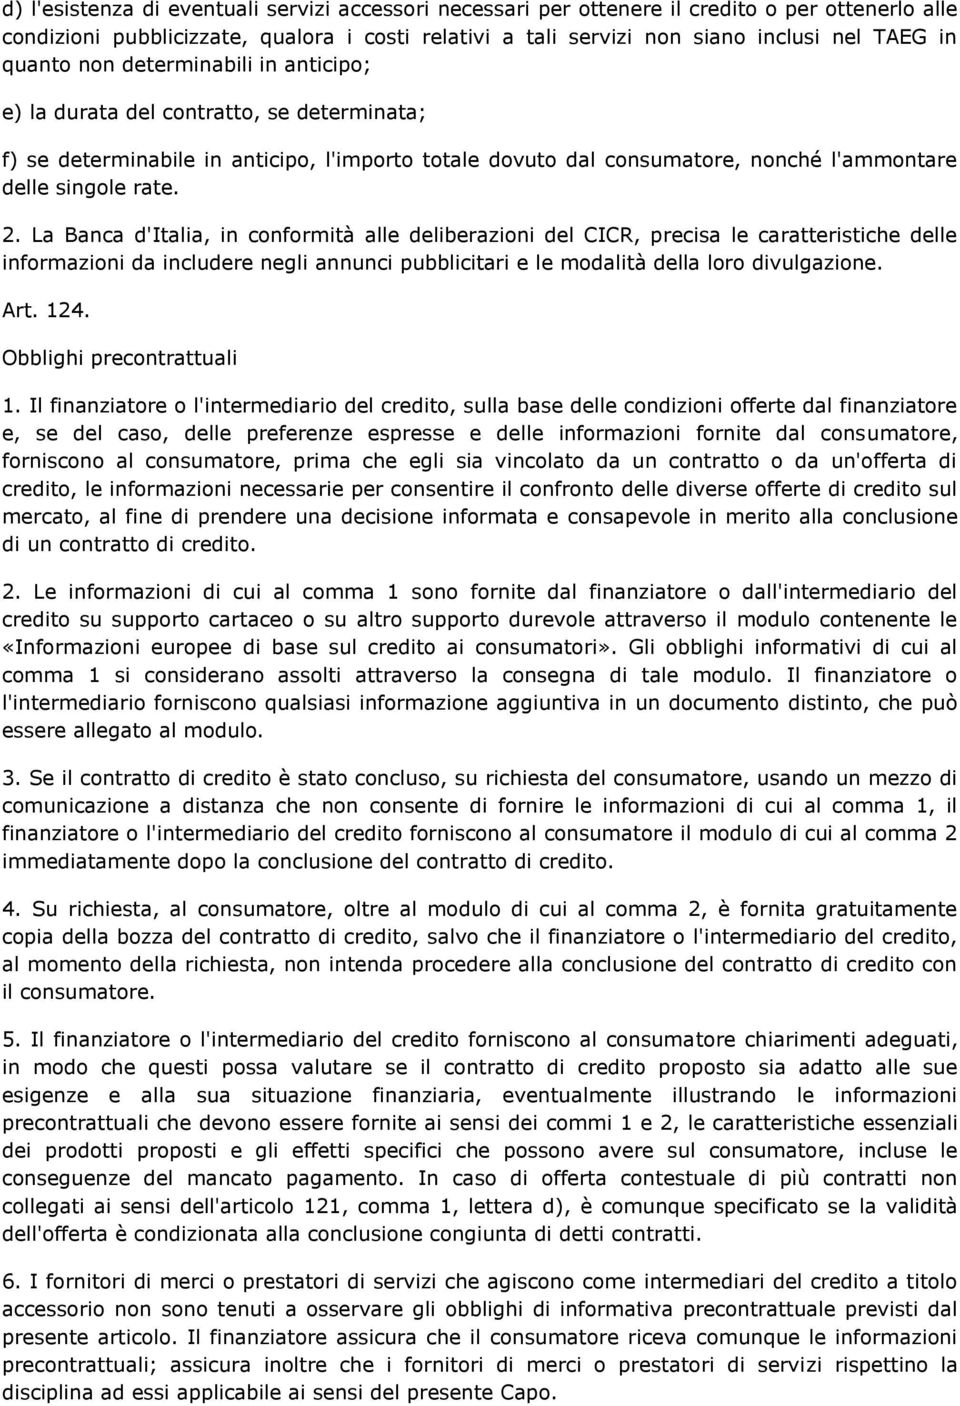 La Banca d'italia, in conformità alle deliberazioni del CICR, precisa le caratteristiche delle informazioni da includere negli annunci pubblicitari e le modalità della loro divulgazione. Art. 124.